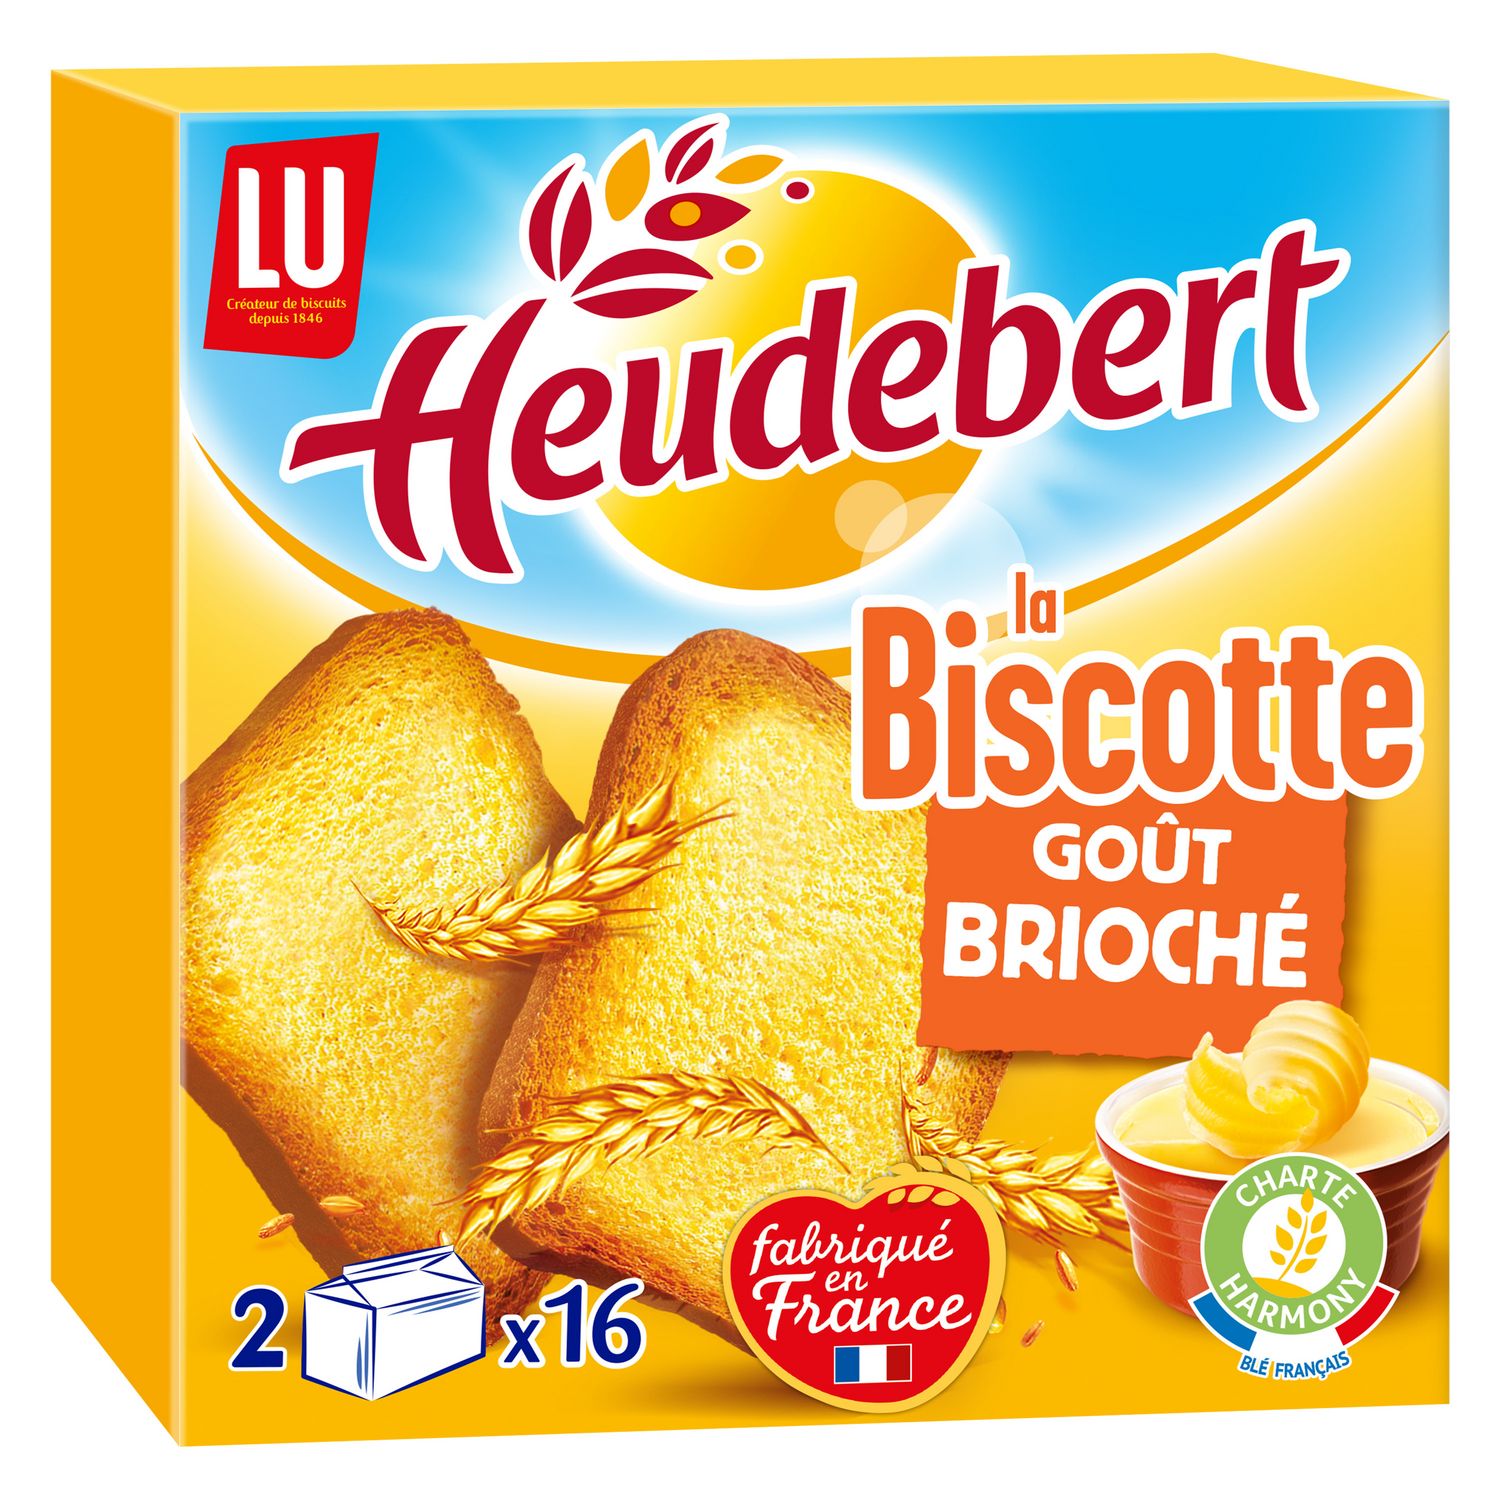 Grossiste Biscottes la braisor 500g - HEUDEBERT